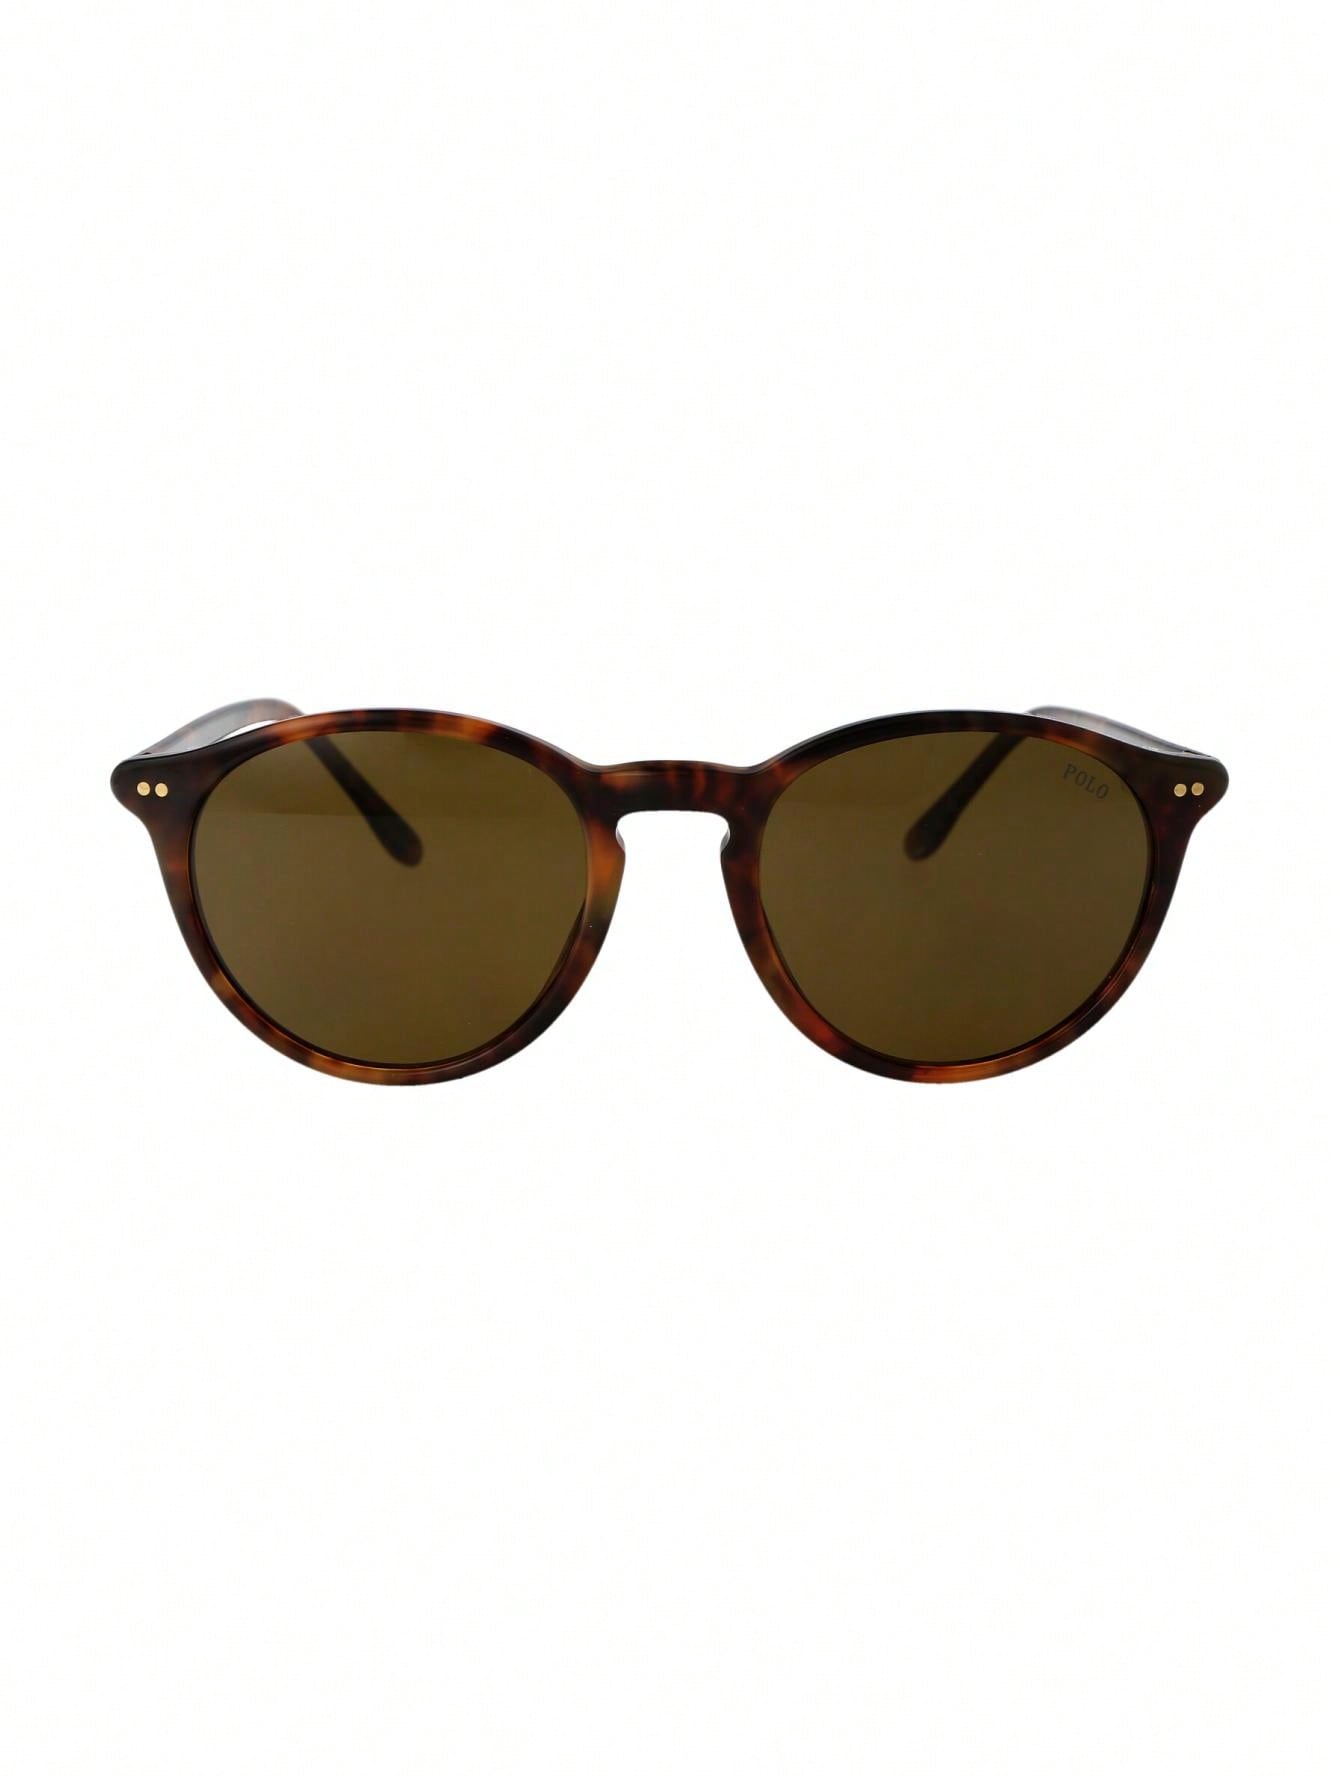 Мужские солнцезащитные очки Polo Ralph Lauren DECOR 0PH4193501773, многоцветный солнцезащитные очки ralph 0ra5160 501 11